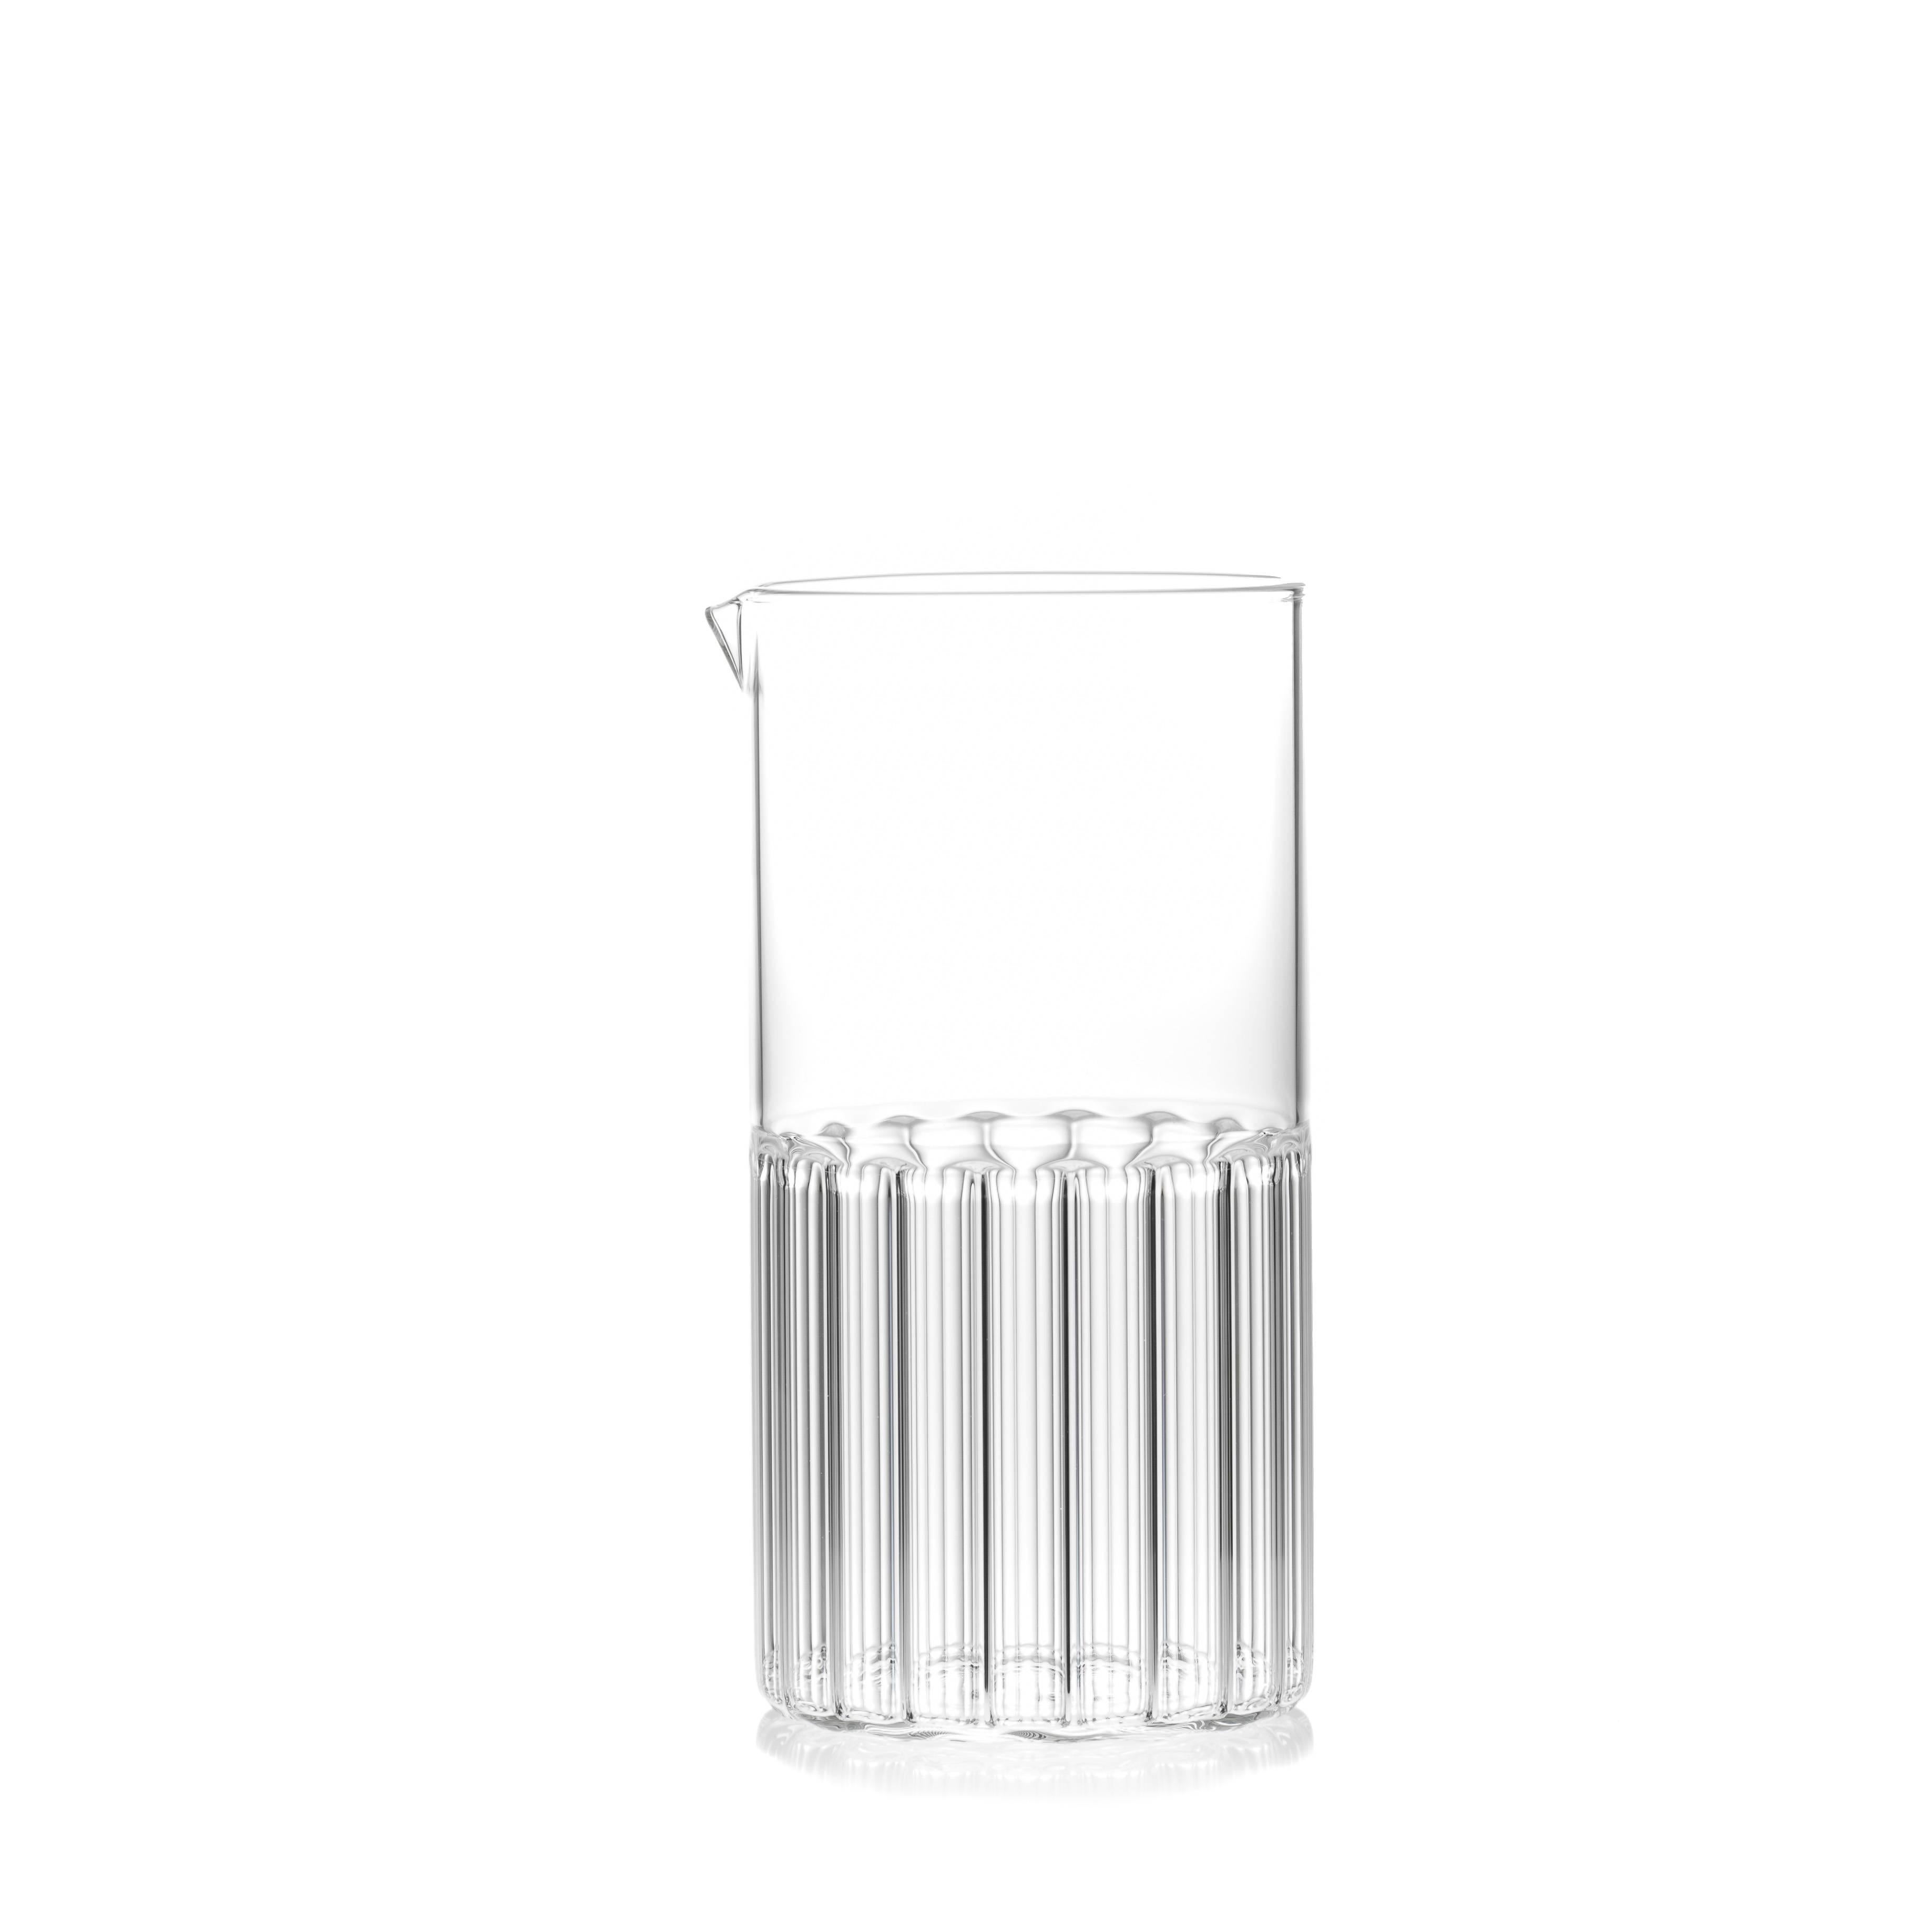 Dieses moderne Set aus Klarglas enthält 1 Bessho-Karaffe und 6 große Rila-Gläser. Jedes Stück wird in der Tschechischen Republik handgefertigt.

So wie die kleine Stadt für die heilende Wirkung ihrer heißen Quellen bekannt ist, so sind es auch die